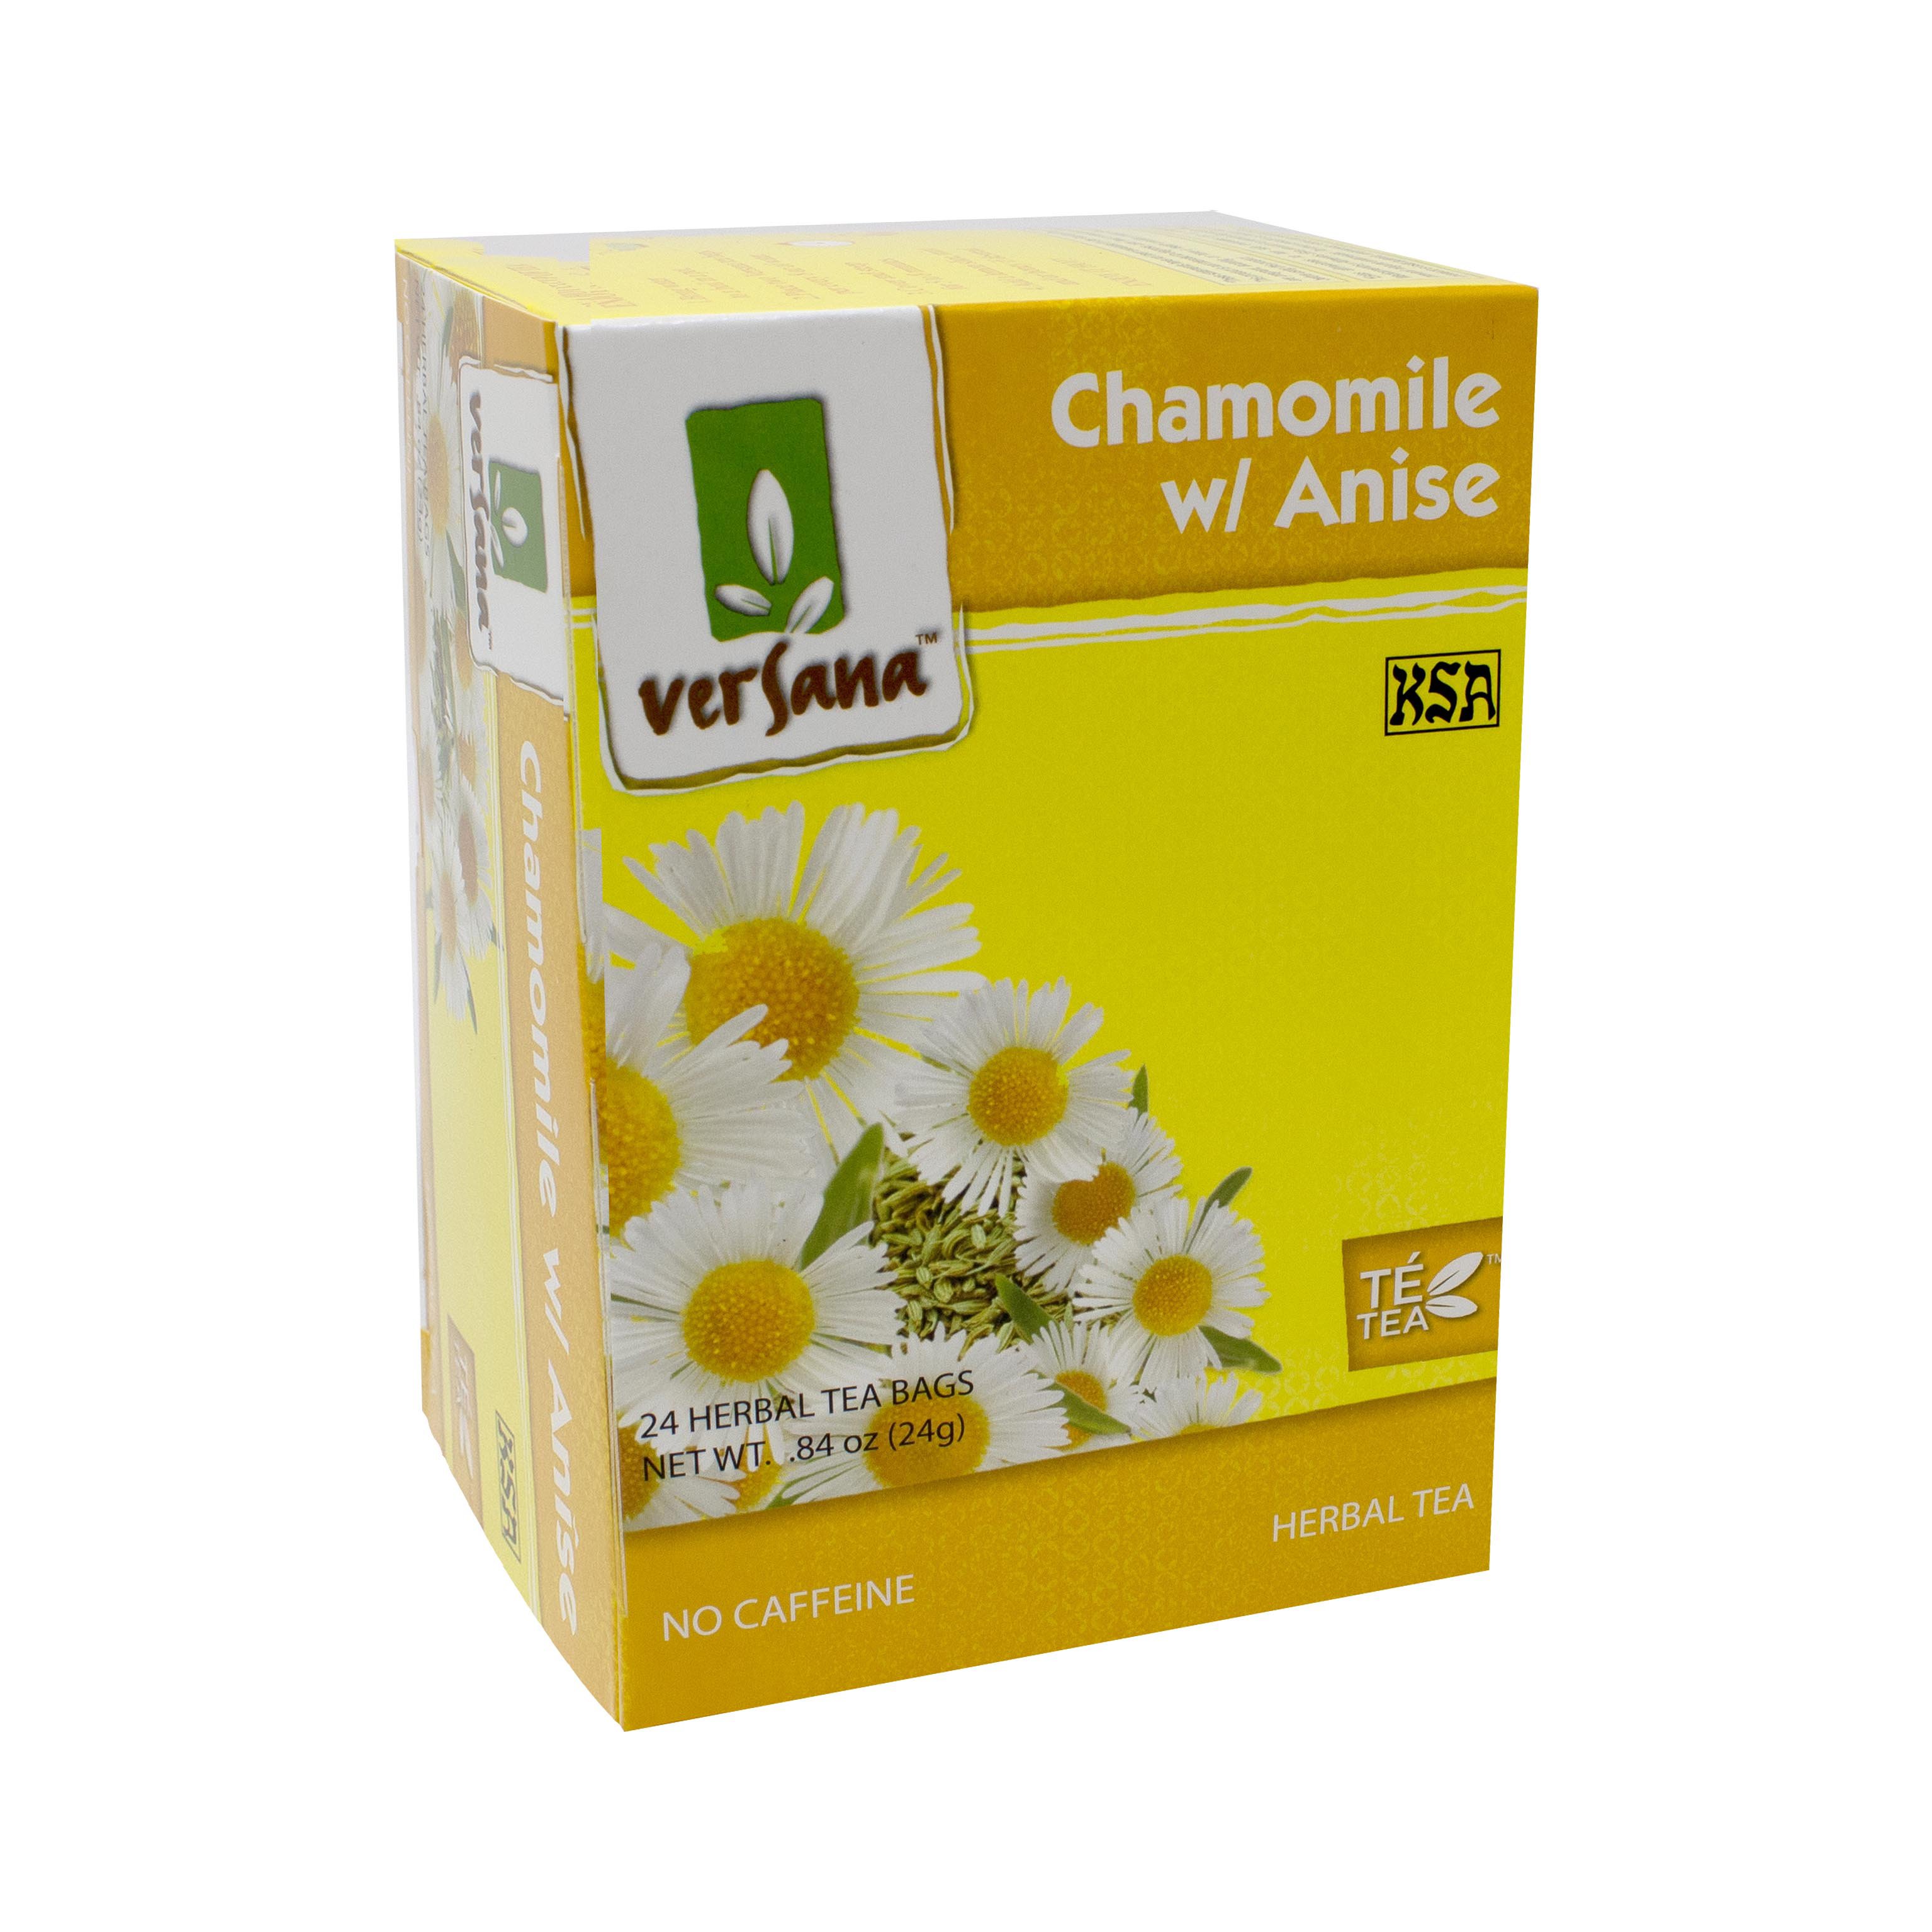 Te de manzanilla y anís,chamomile & anise tea – TIME 2 GROW LLC